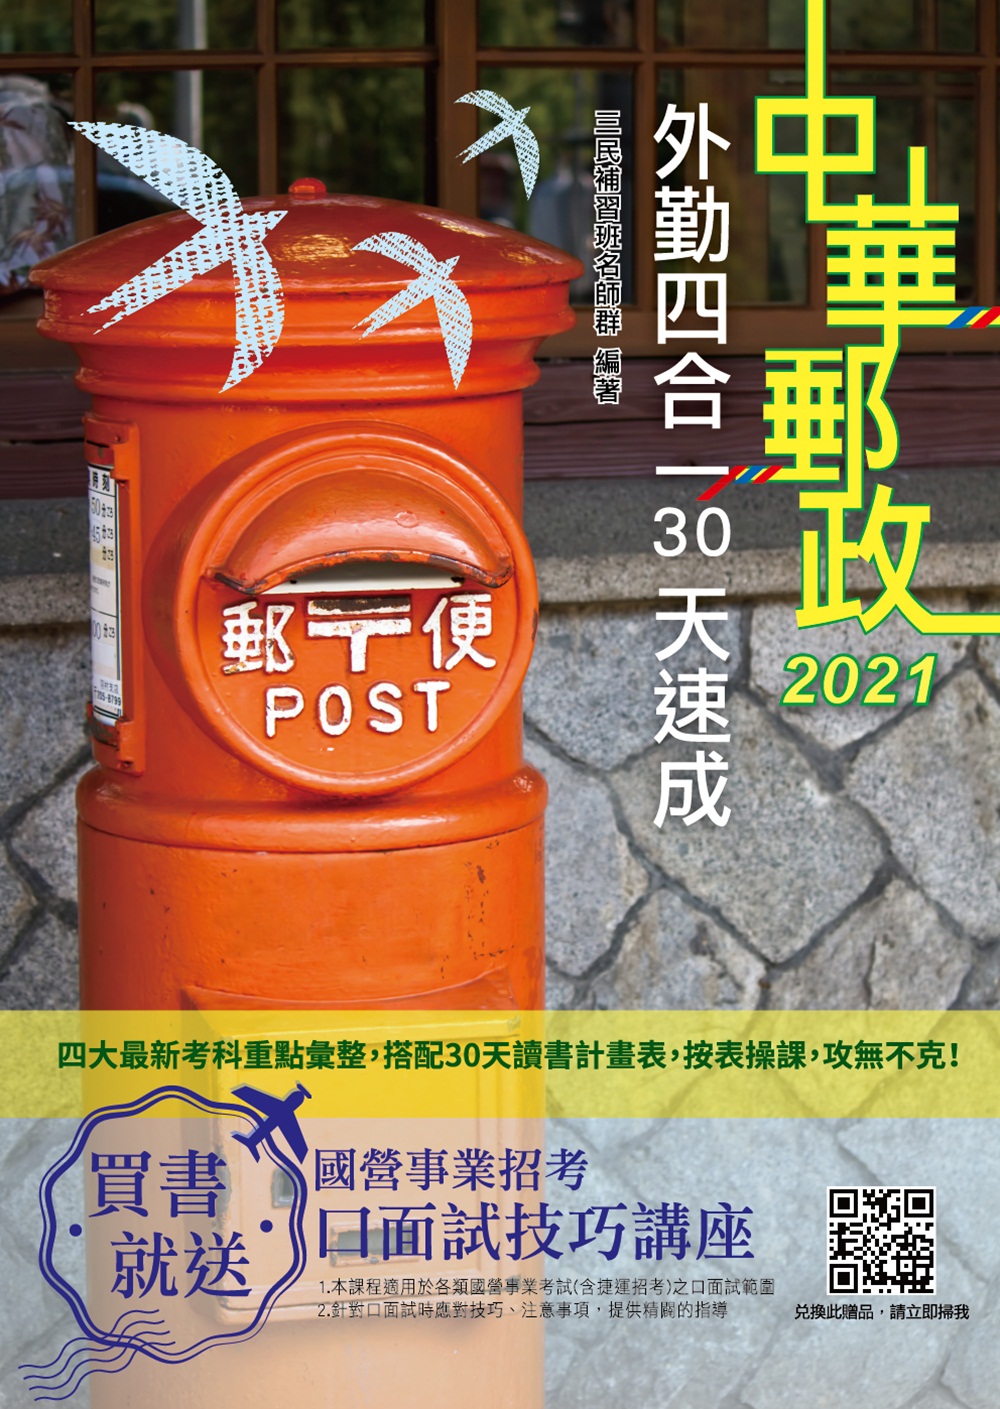 商品圖片 2021郵局外勤四合一30天速成(收錄1519道試題)